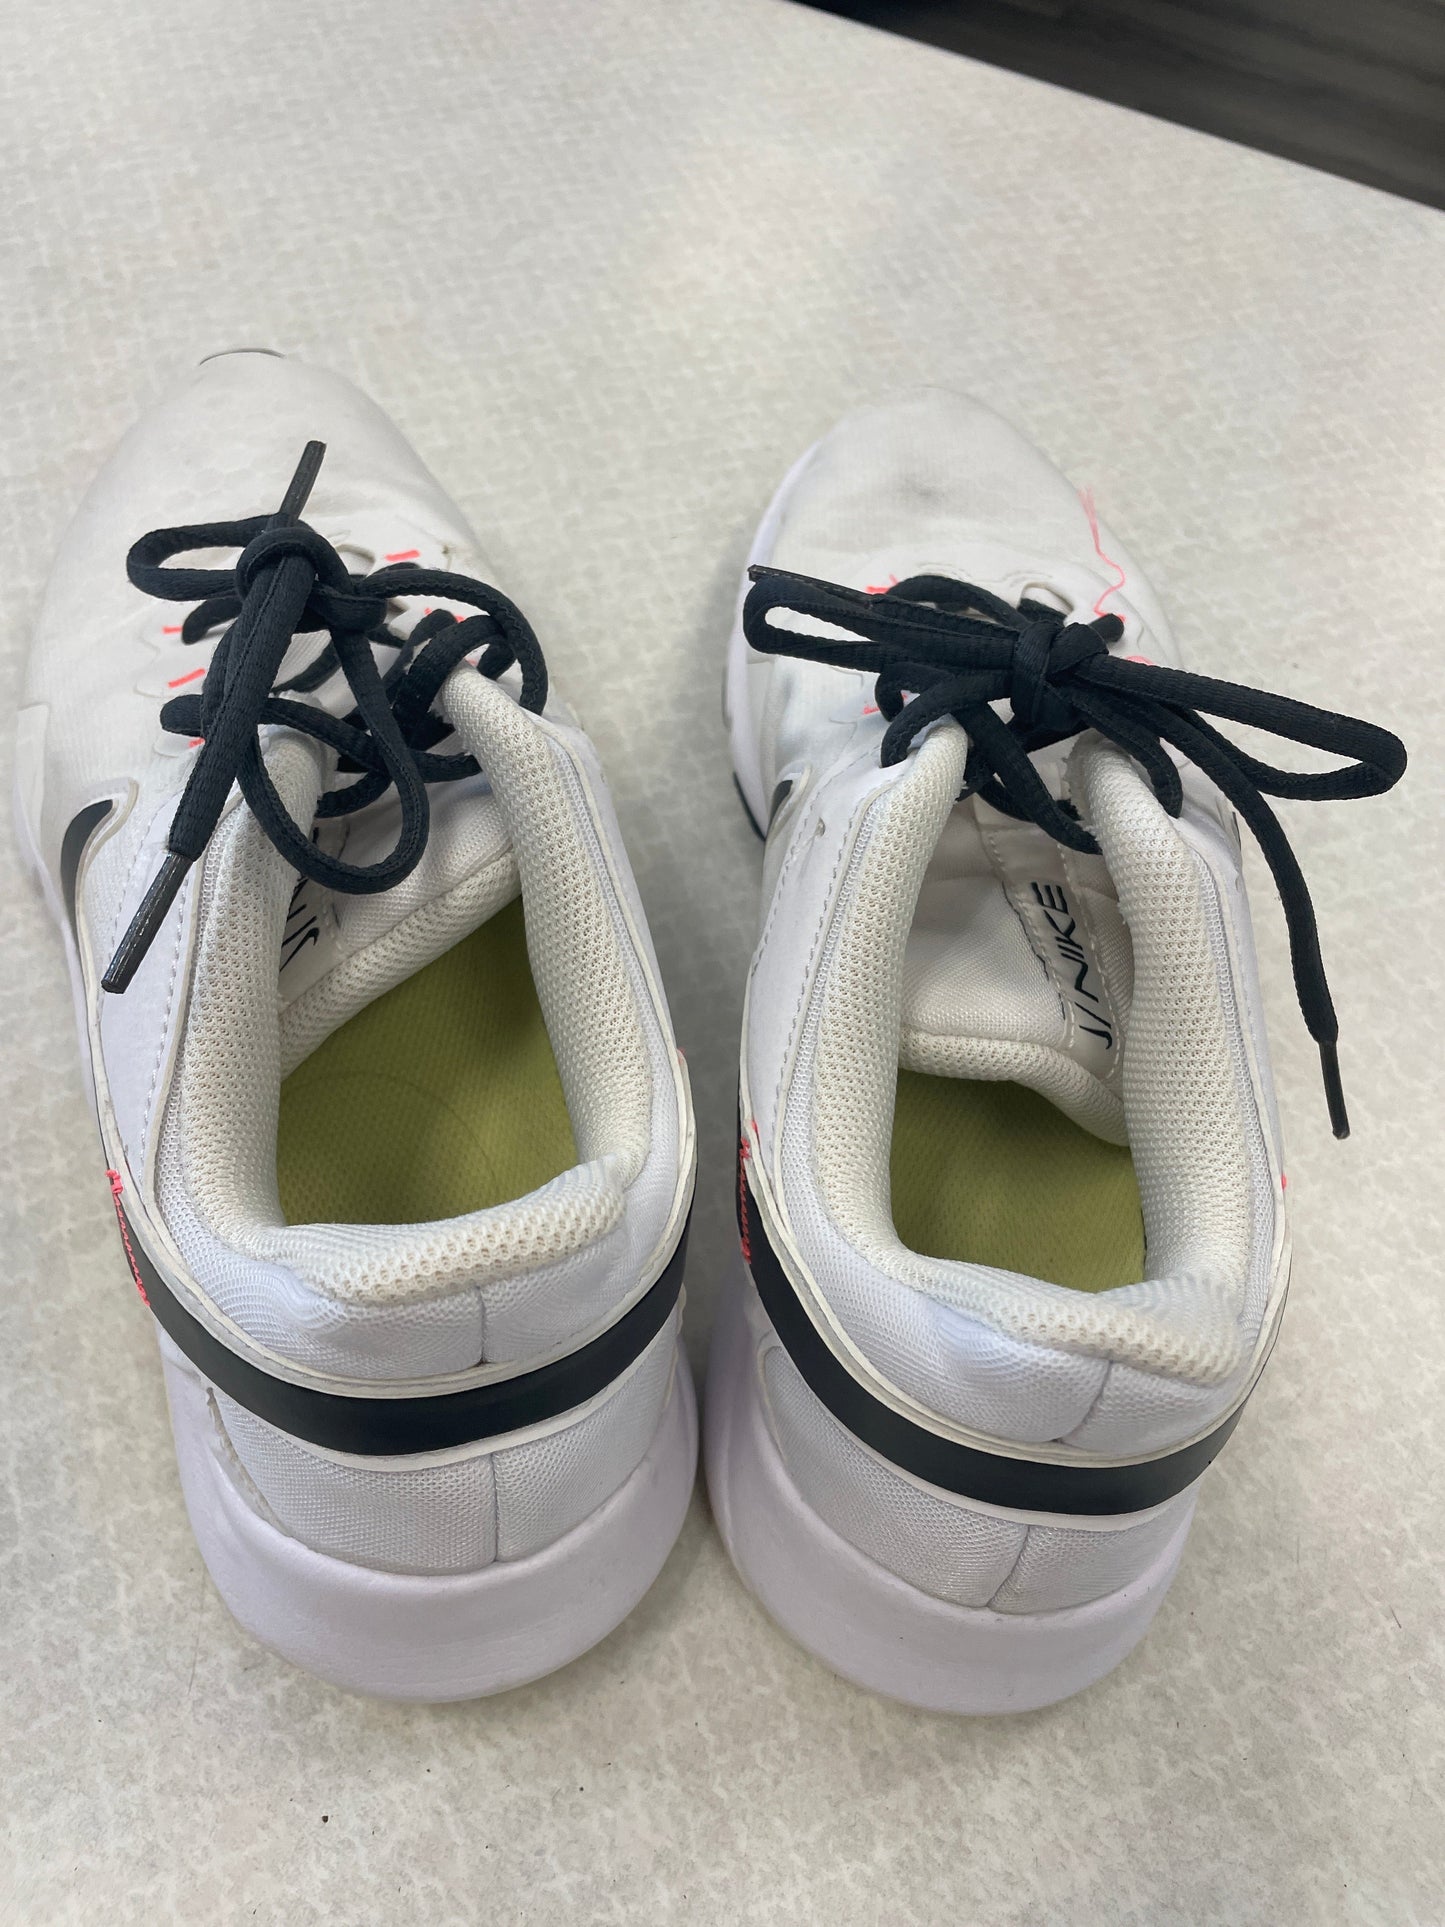 White Shoes Athletic Nike, Size 10.5